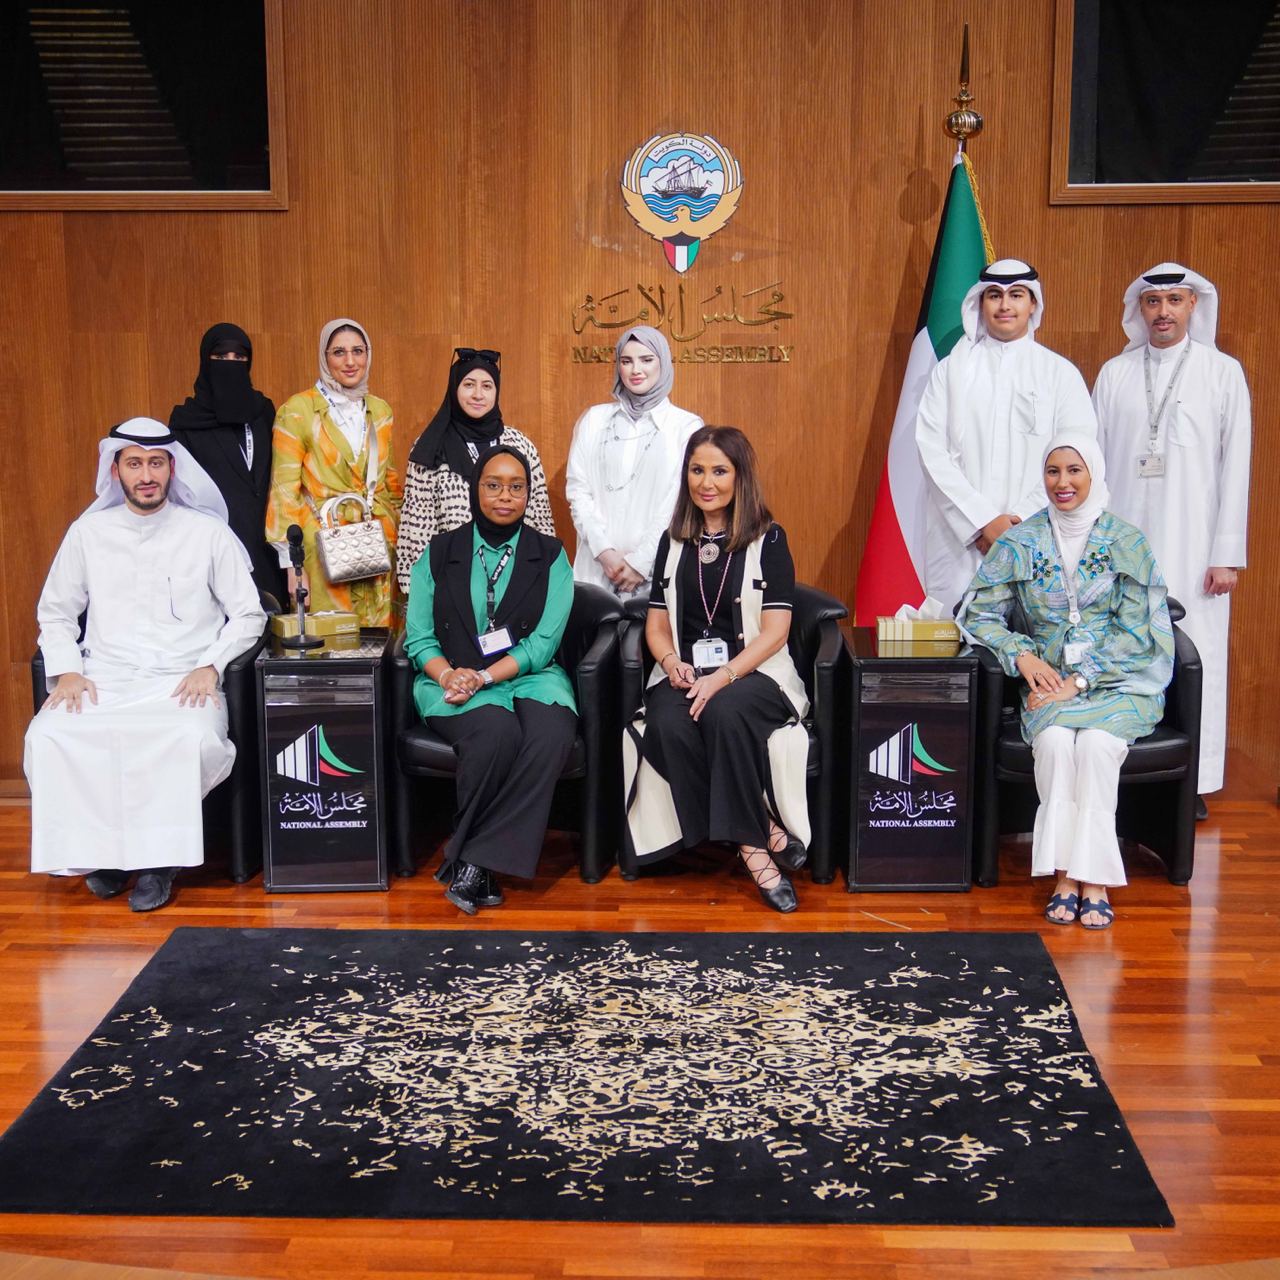 قطاع الموارد البشرية ينظم بالتعاون مع لجنة الميزانيات ورشة تدريبية لطلبة كلية القانون الكويتية العالمية بحضور الدمخي